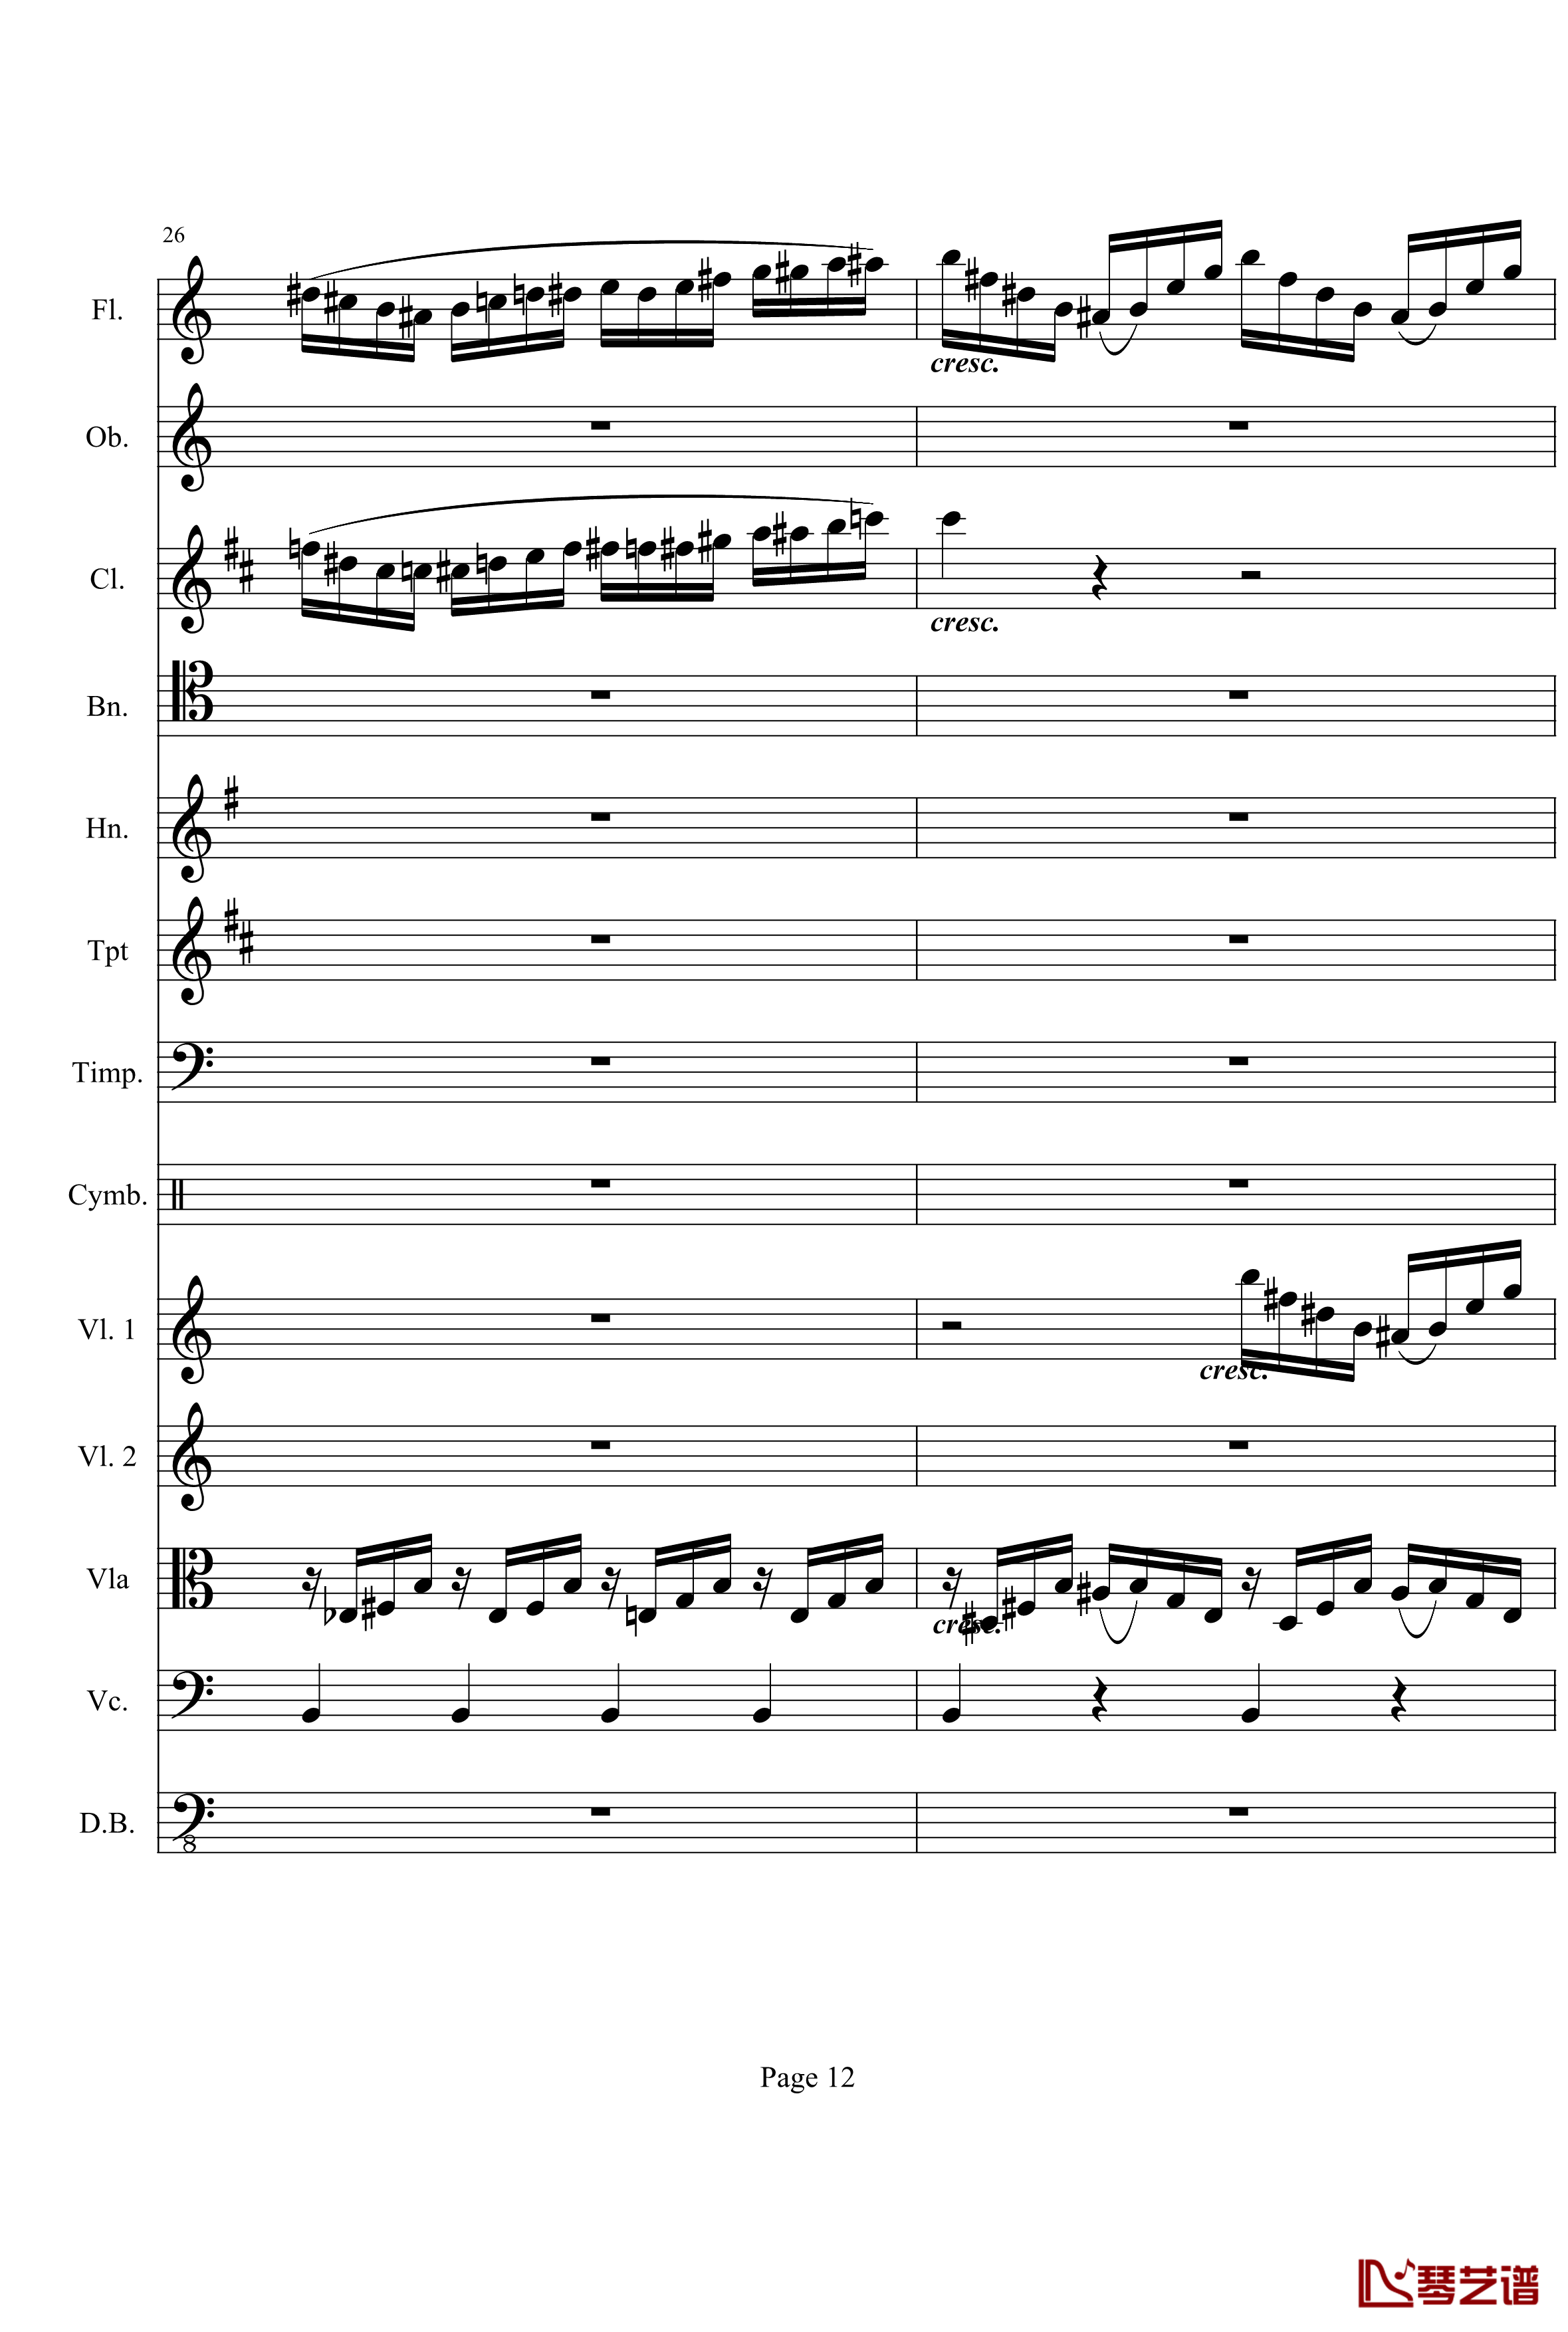 奏鸣曲之交响钢琴谱-第21首-Ⅰ-贝多芬-beethoven12